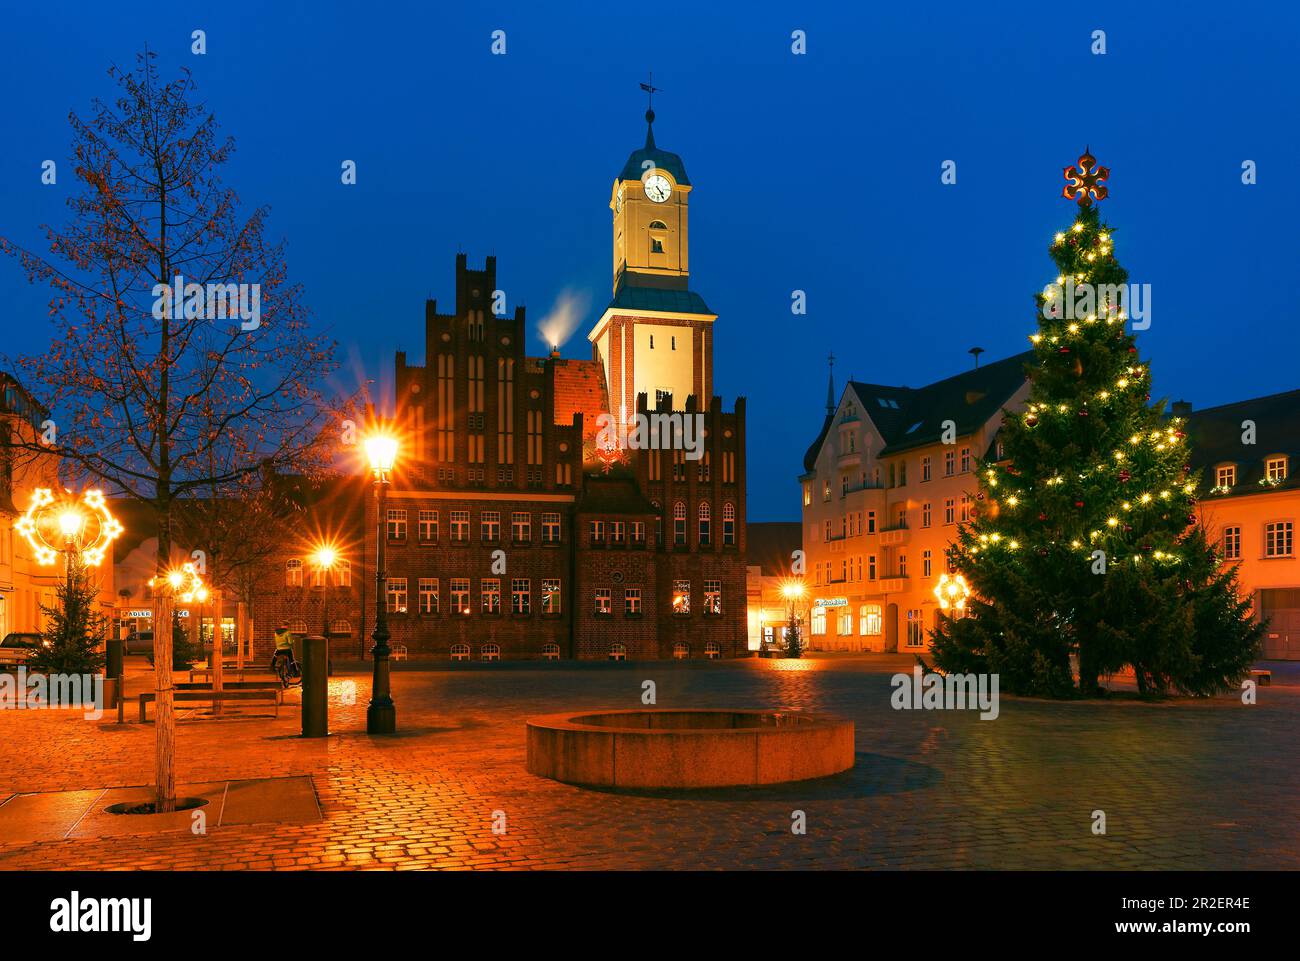 Markt mit dem Rathaus in Wittstock/Dosse, Ostprignitz-Ruppin, Brandenburg, Deutschland Stockfoto